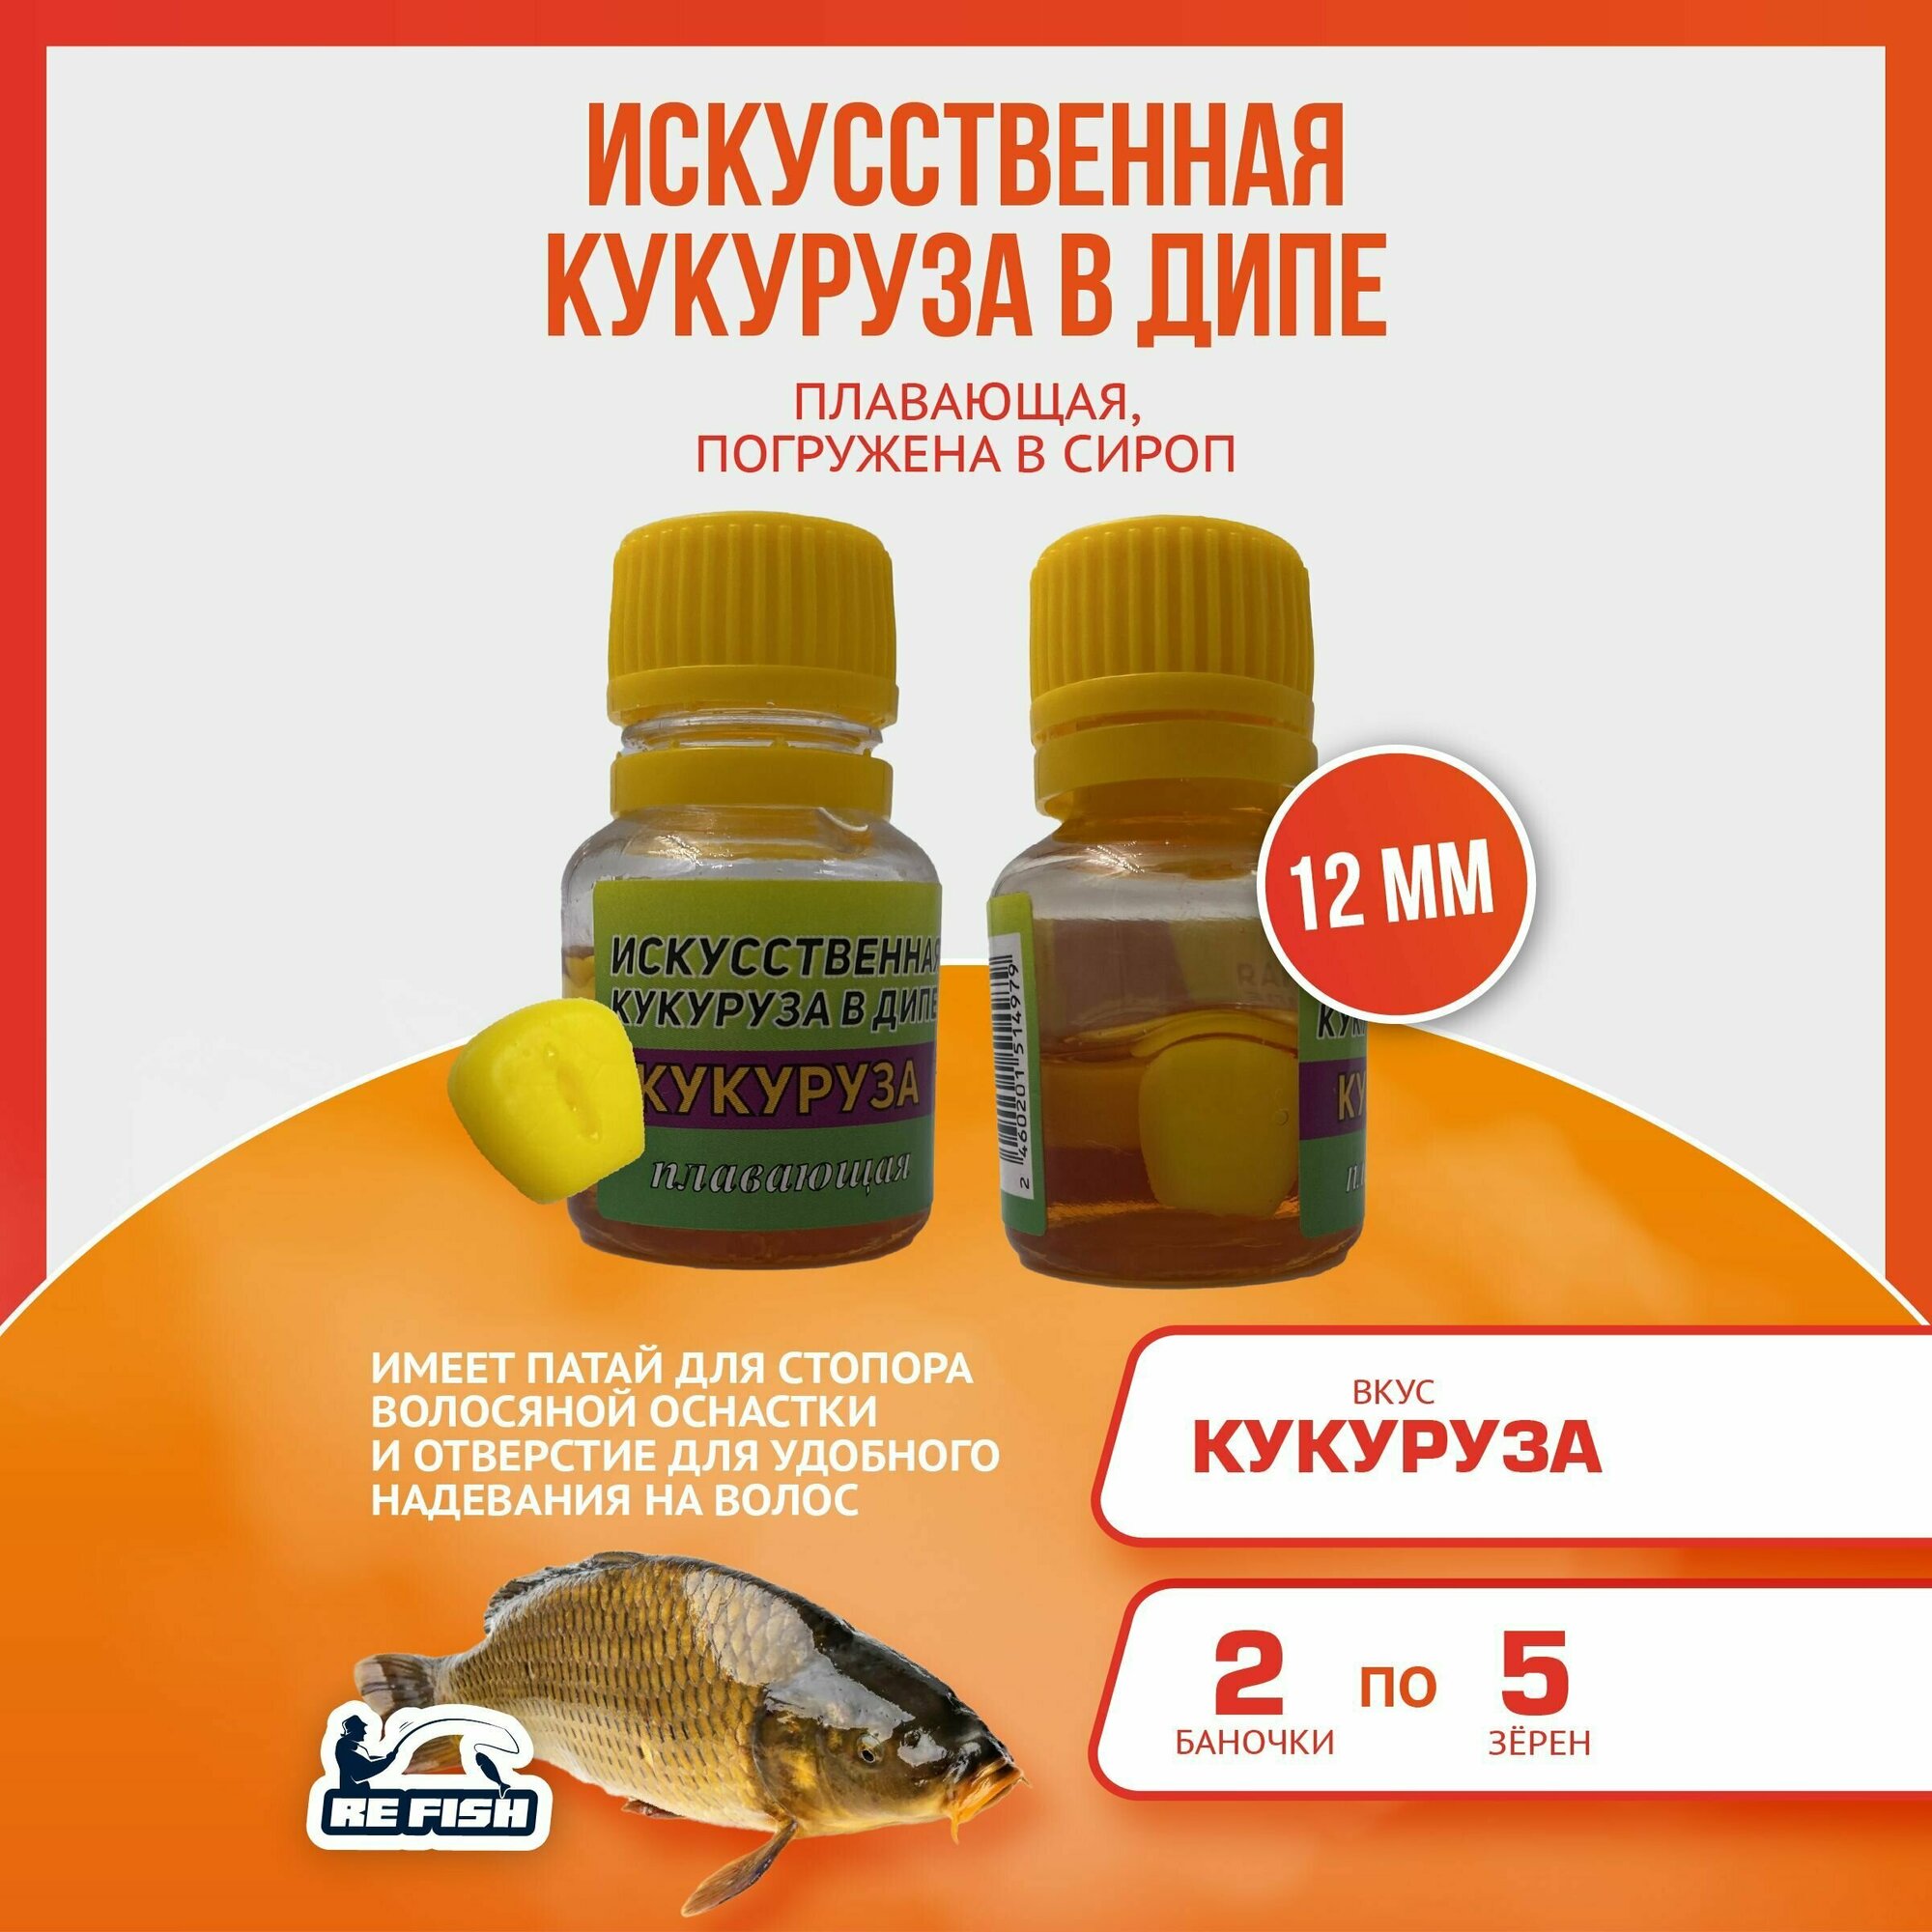 Плавающая силиконовая искусственная кукуруза для рыбалки в дипе "кукуруза", 12 мм — купить в интернет-магазине по низкой цене на Яндекс Маркете